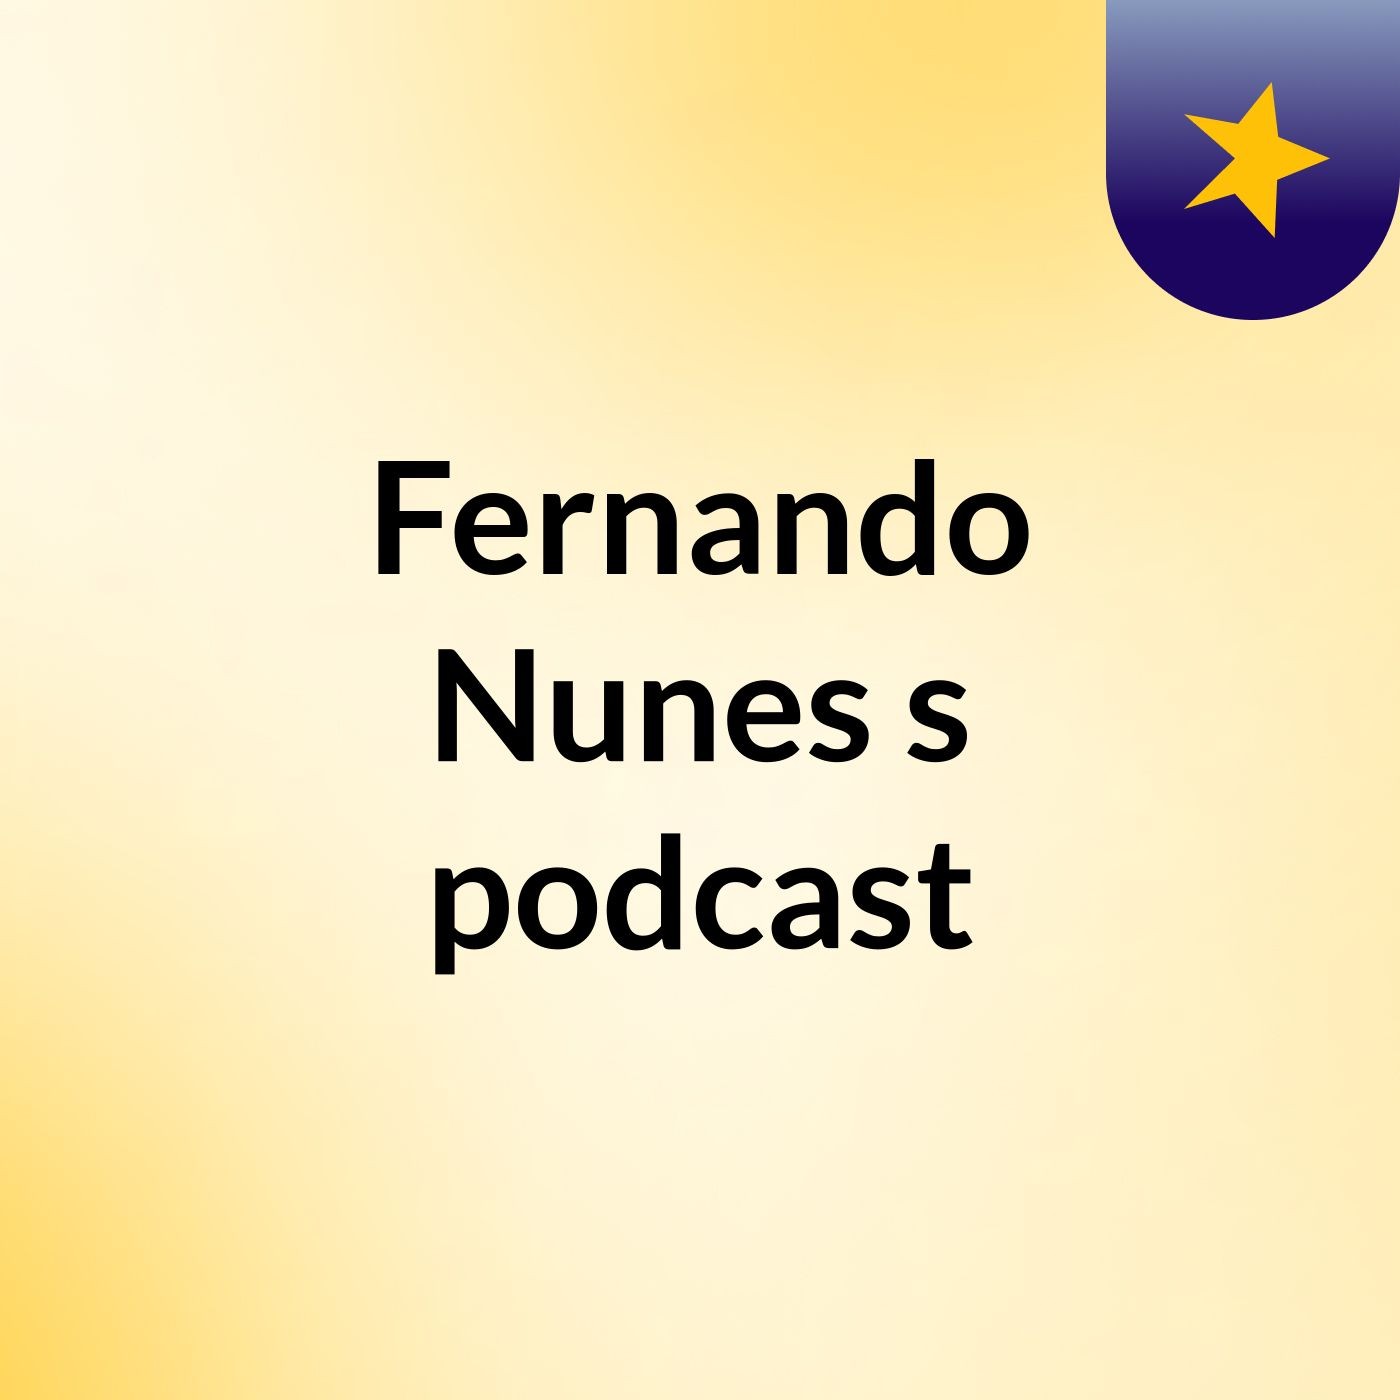 Fernando Nunes's podcast